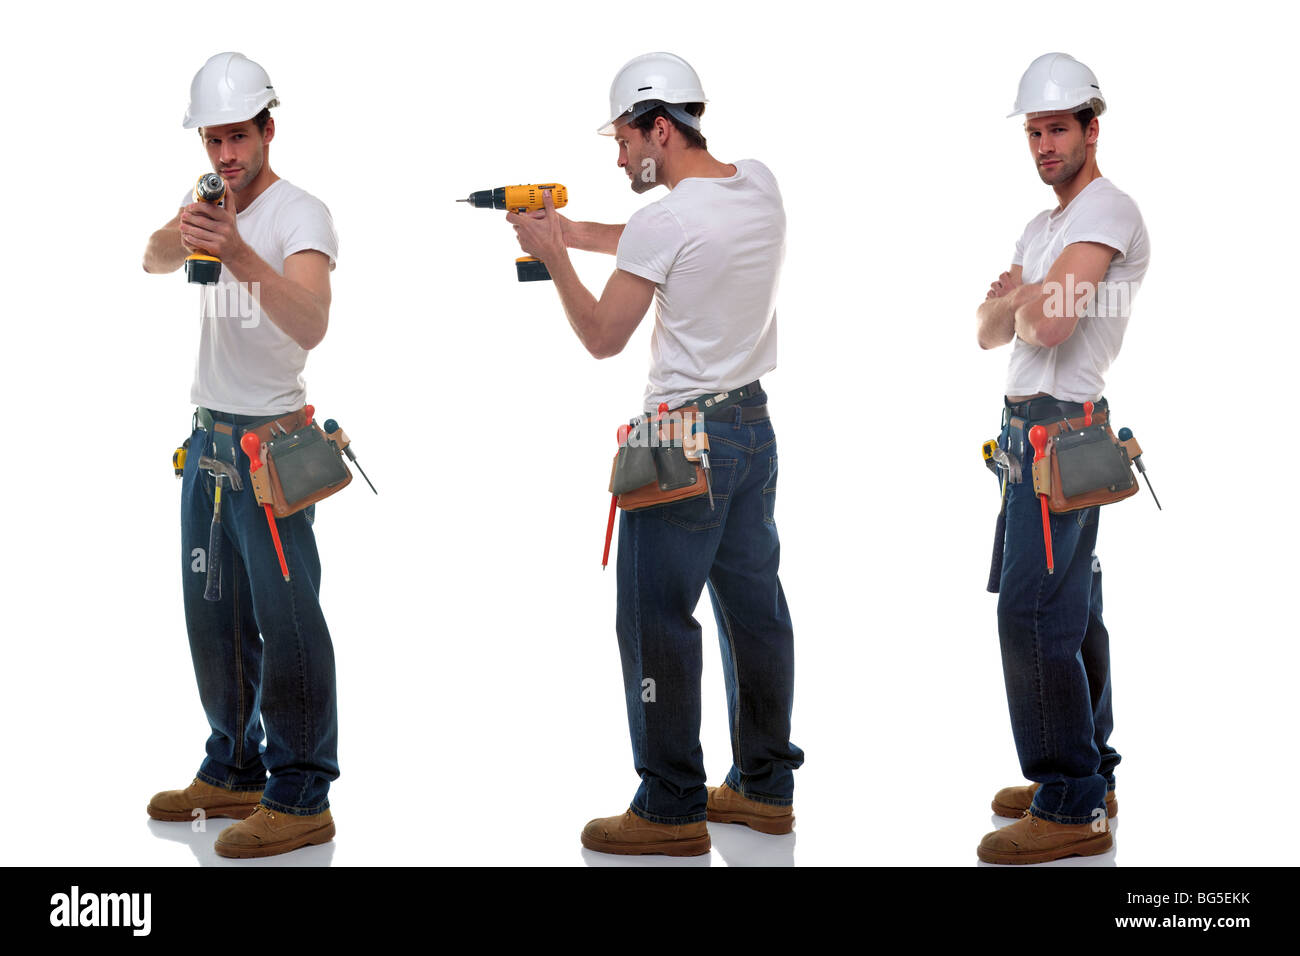 Drei Schüsse eines Erbauers in verschiedenen Posen, einen Hut Werkzeug Gürtel und Sicherheit, isoliert auf einem weißen Hintergrund. Stockfoto